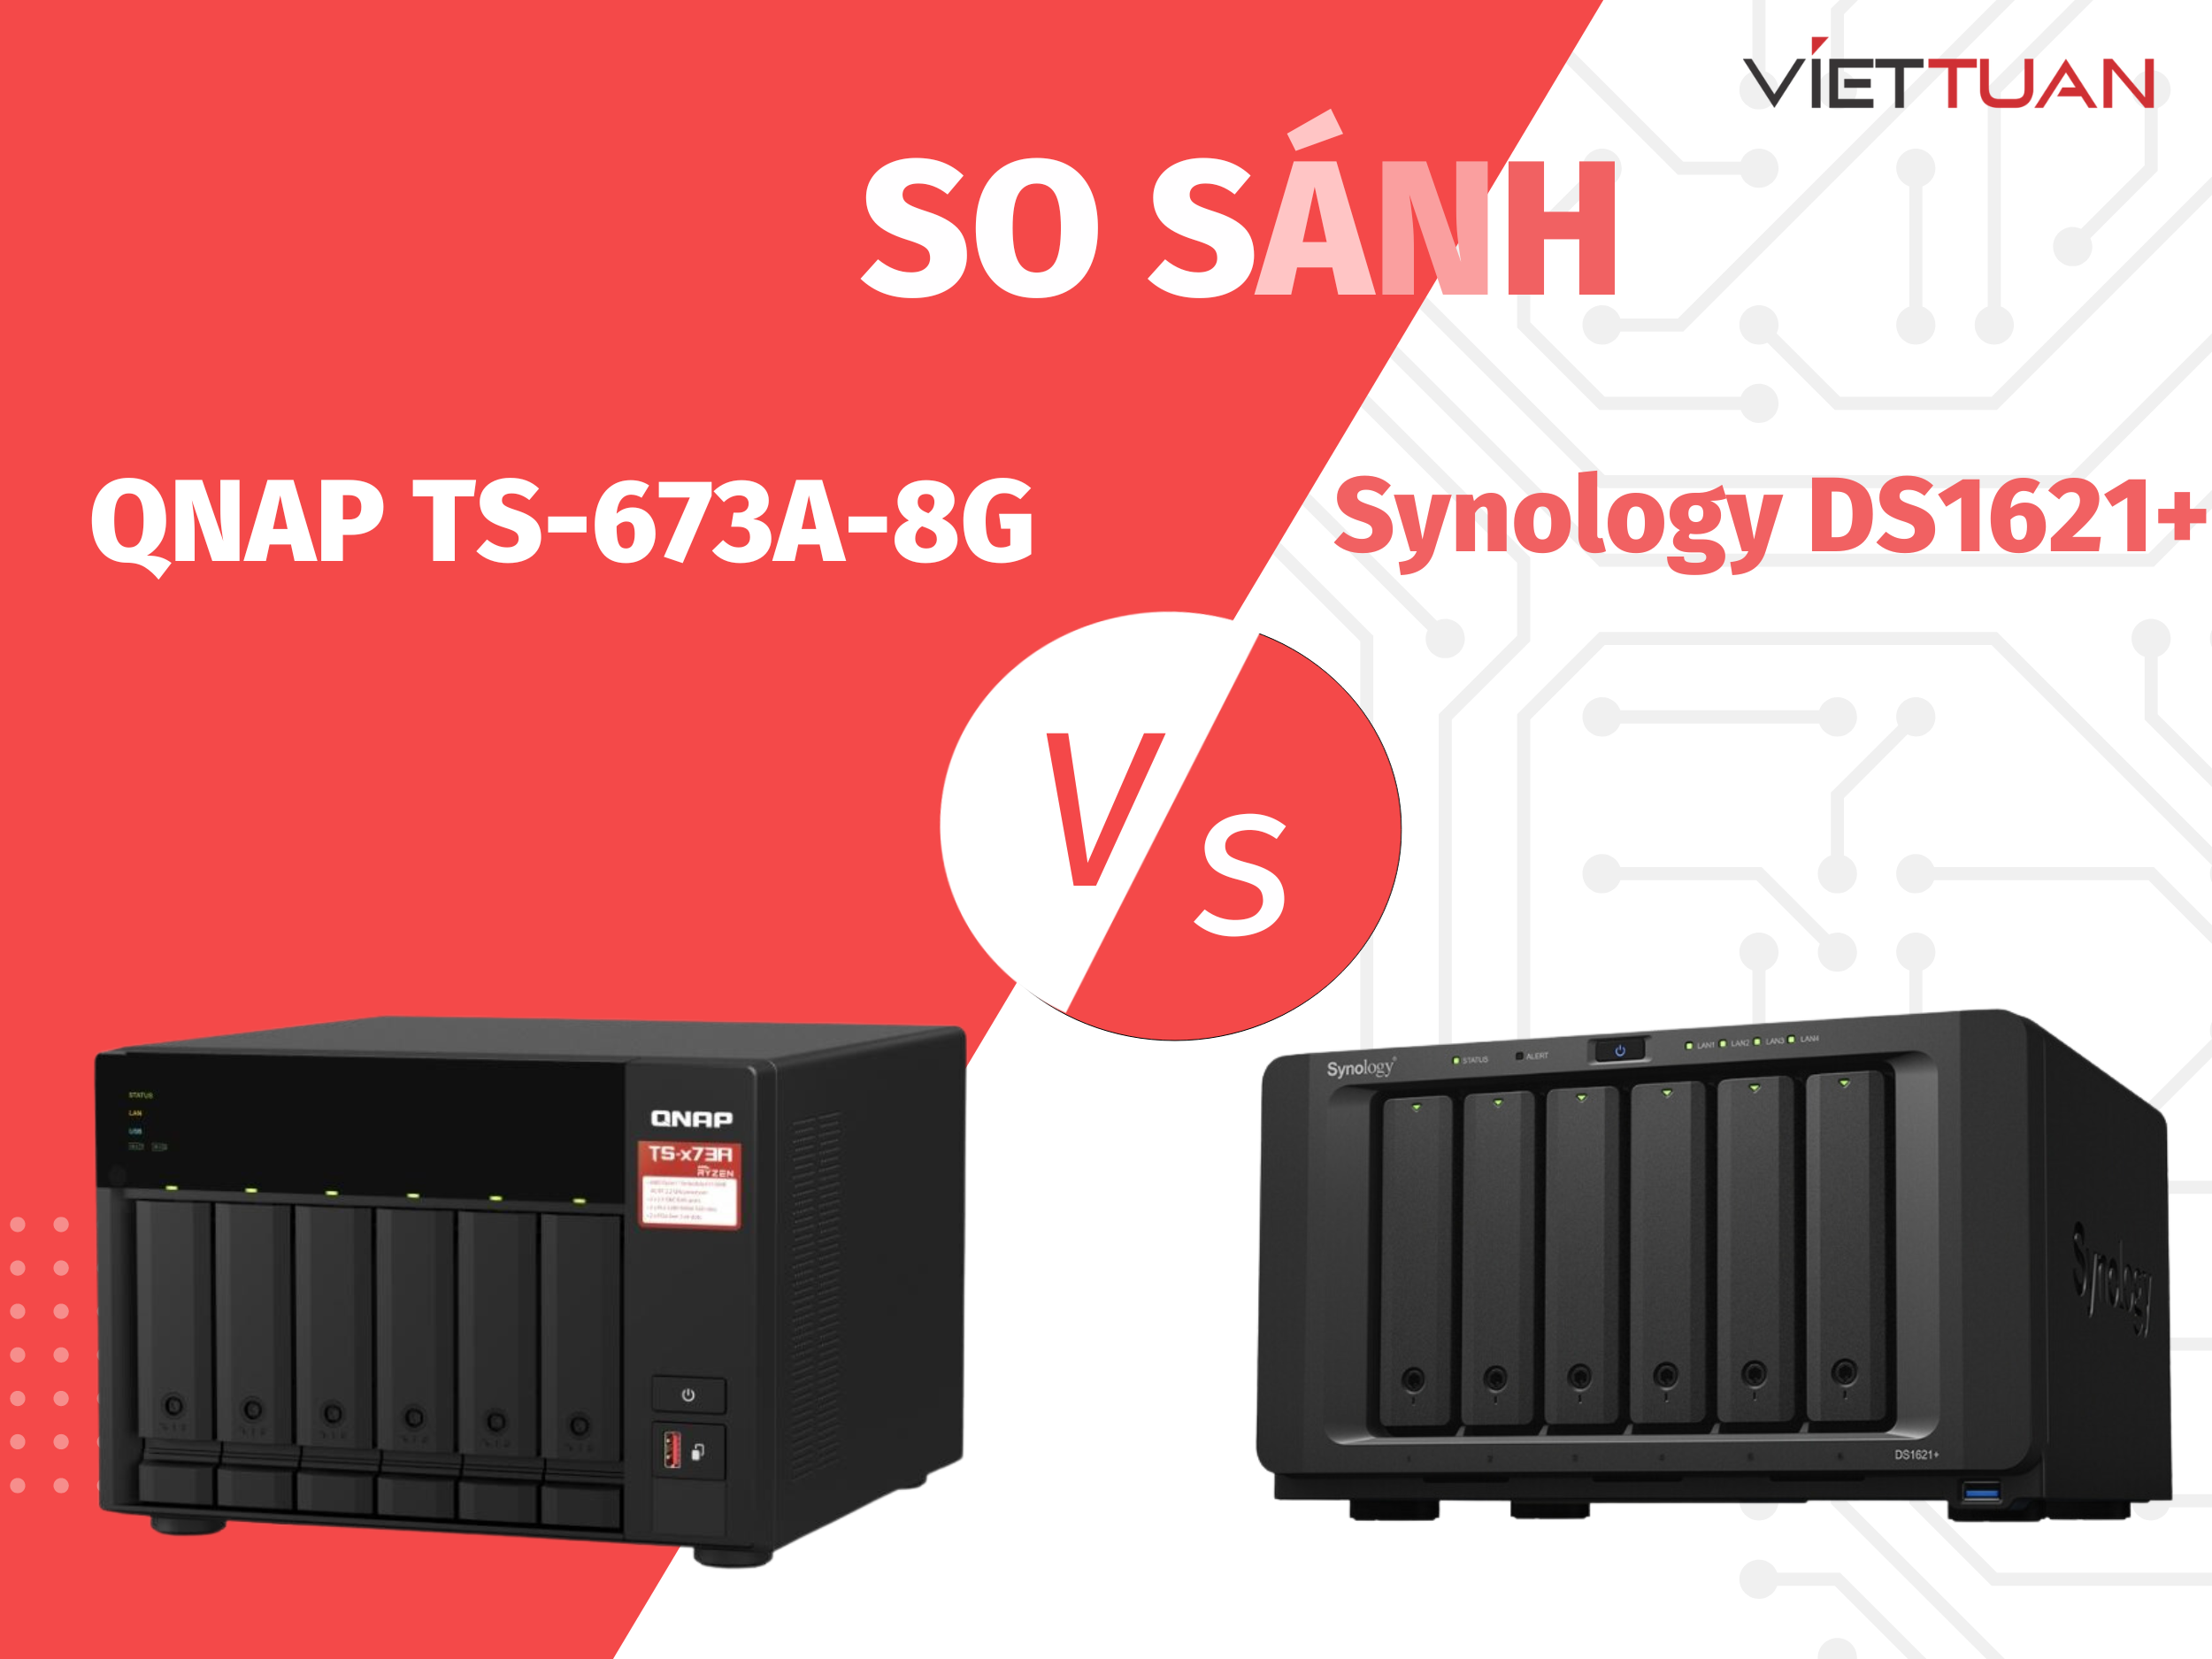 So sánh QNAP TS-673A-8G và Synology DS1621+ - Đâu là mẫu NAS 6 khay nên mua